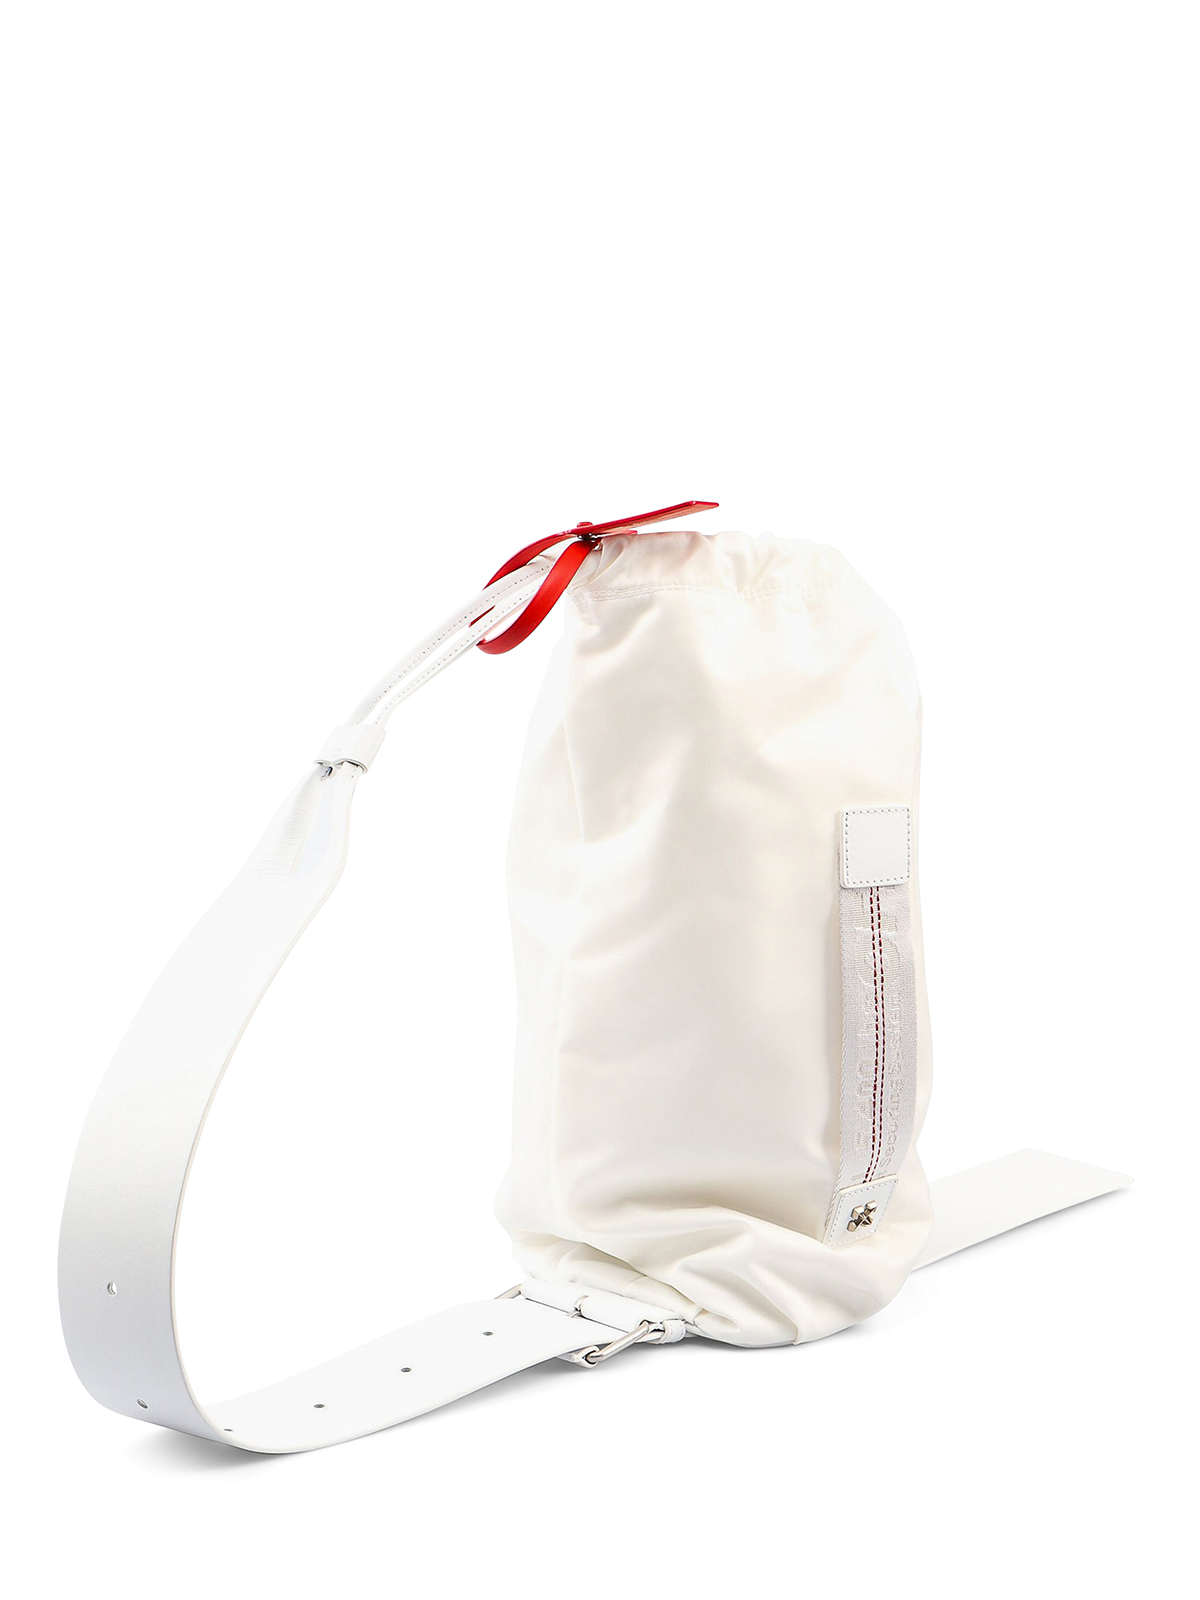 Backpacks Off-White - White nylon one shoulder backpack